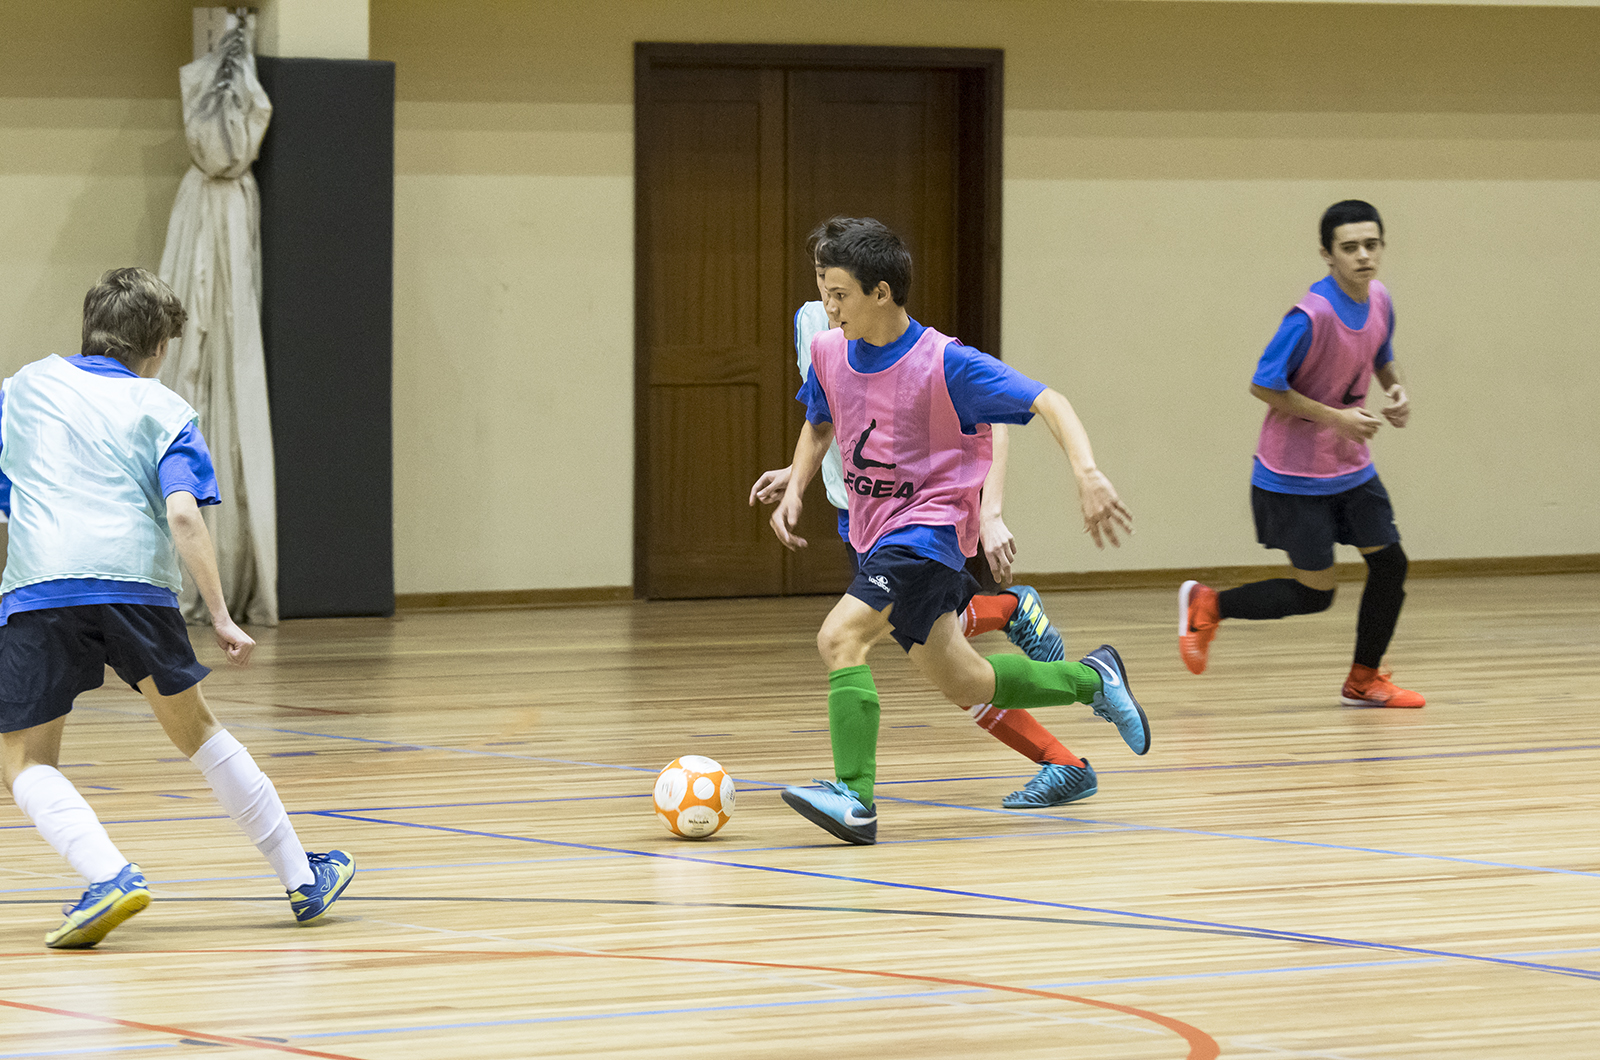 SUB-15 - Futsal: arranque dos trabalhos